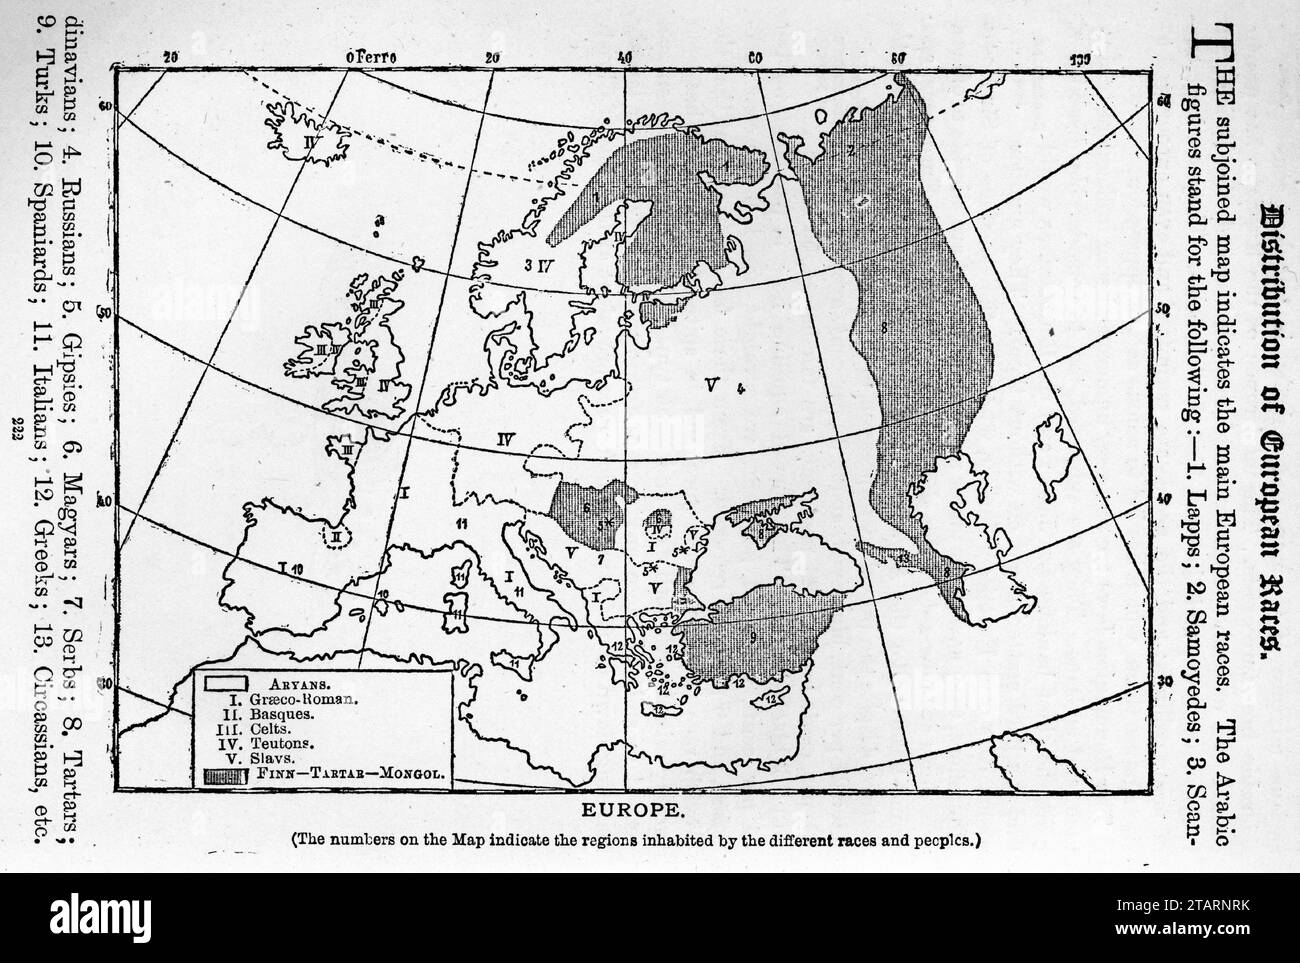 Carte montrant la répartition des races européennes. Publié circa 1887 Banque D'Images